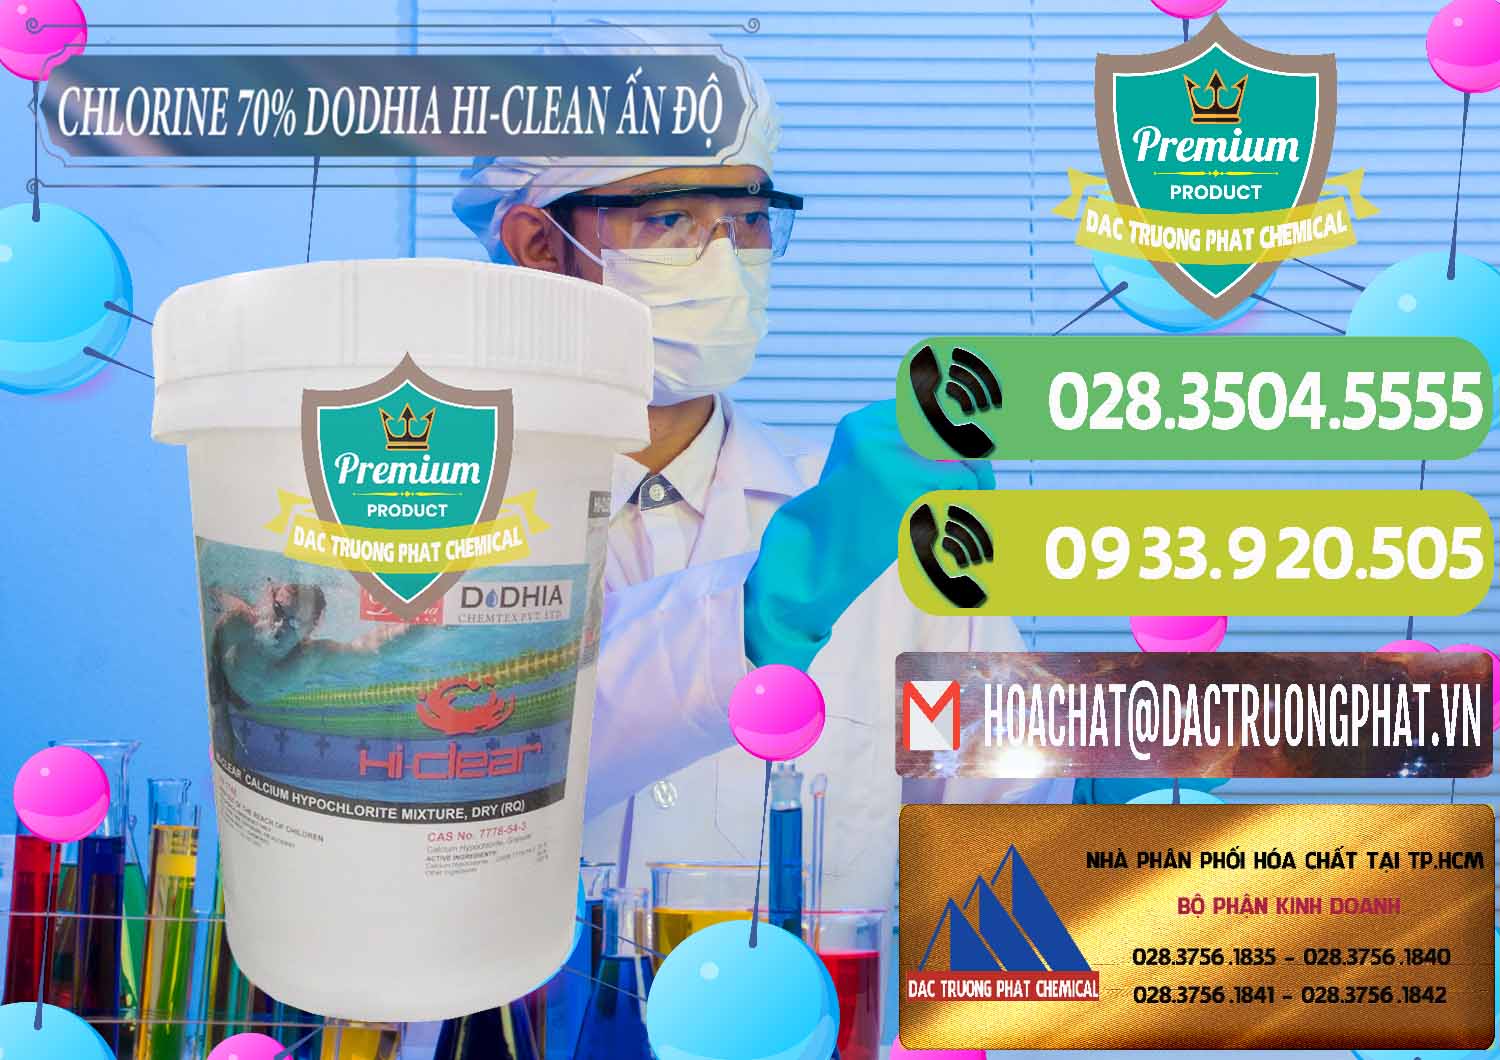 Nơi chuyên phân phối - bán Chlorine – Clorin 70% Dodhia Hi-Clean Ấn Độ India - 0214 - Công ty chuyên kinh doanh & cung cấp hóa chất tại TP.HCM - hoachatmientay.vn